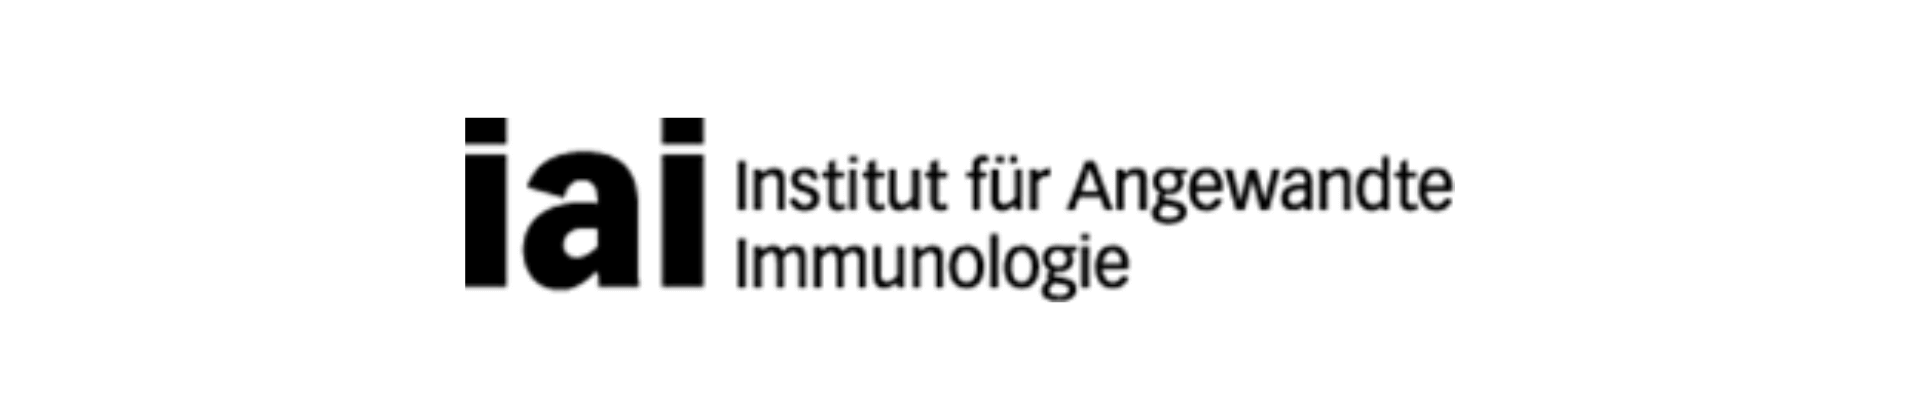 iai - Institut für Angewandte Immunologie